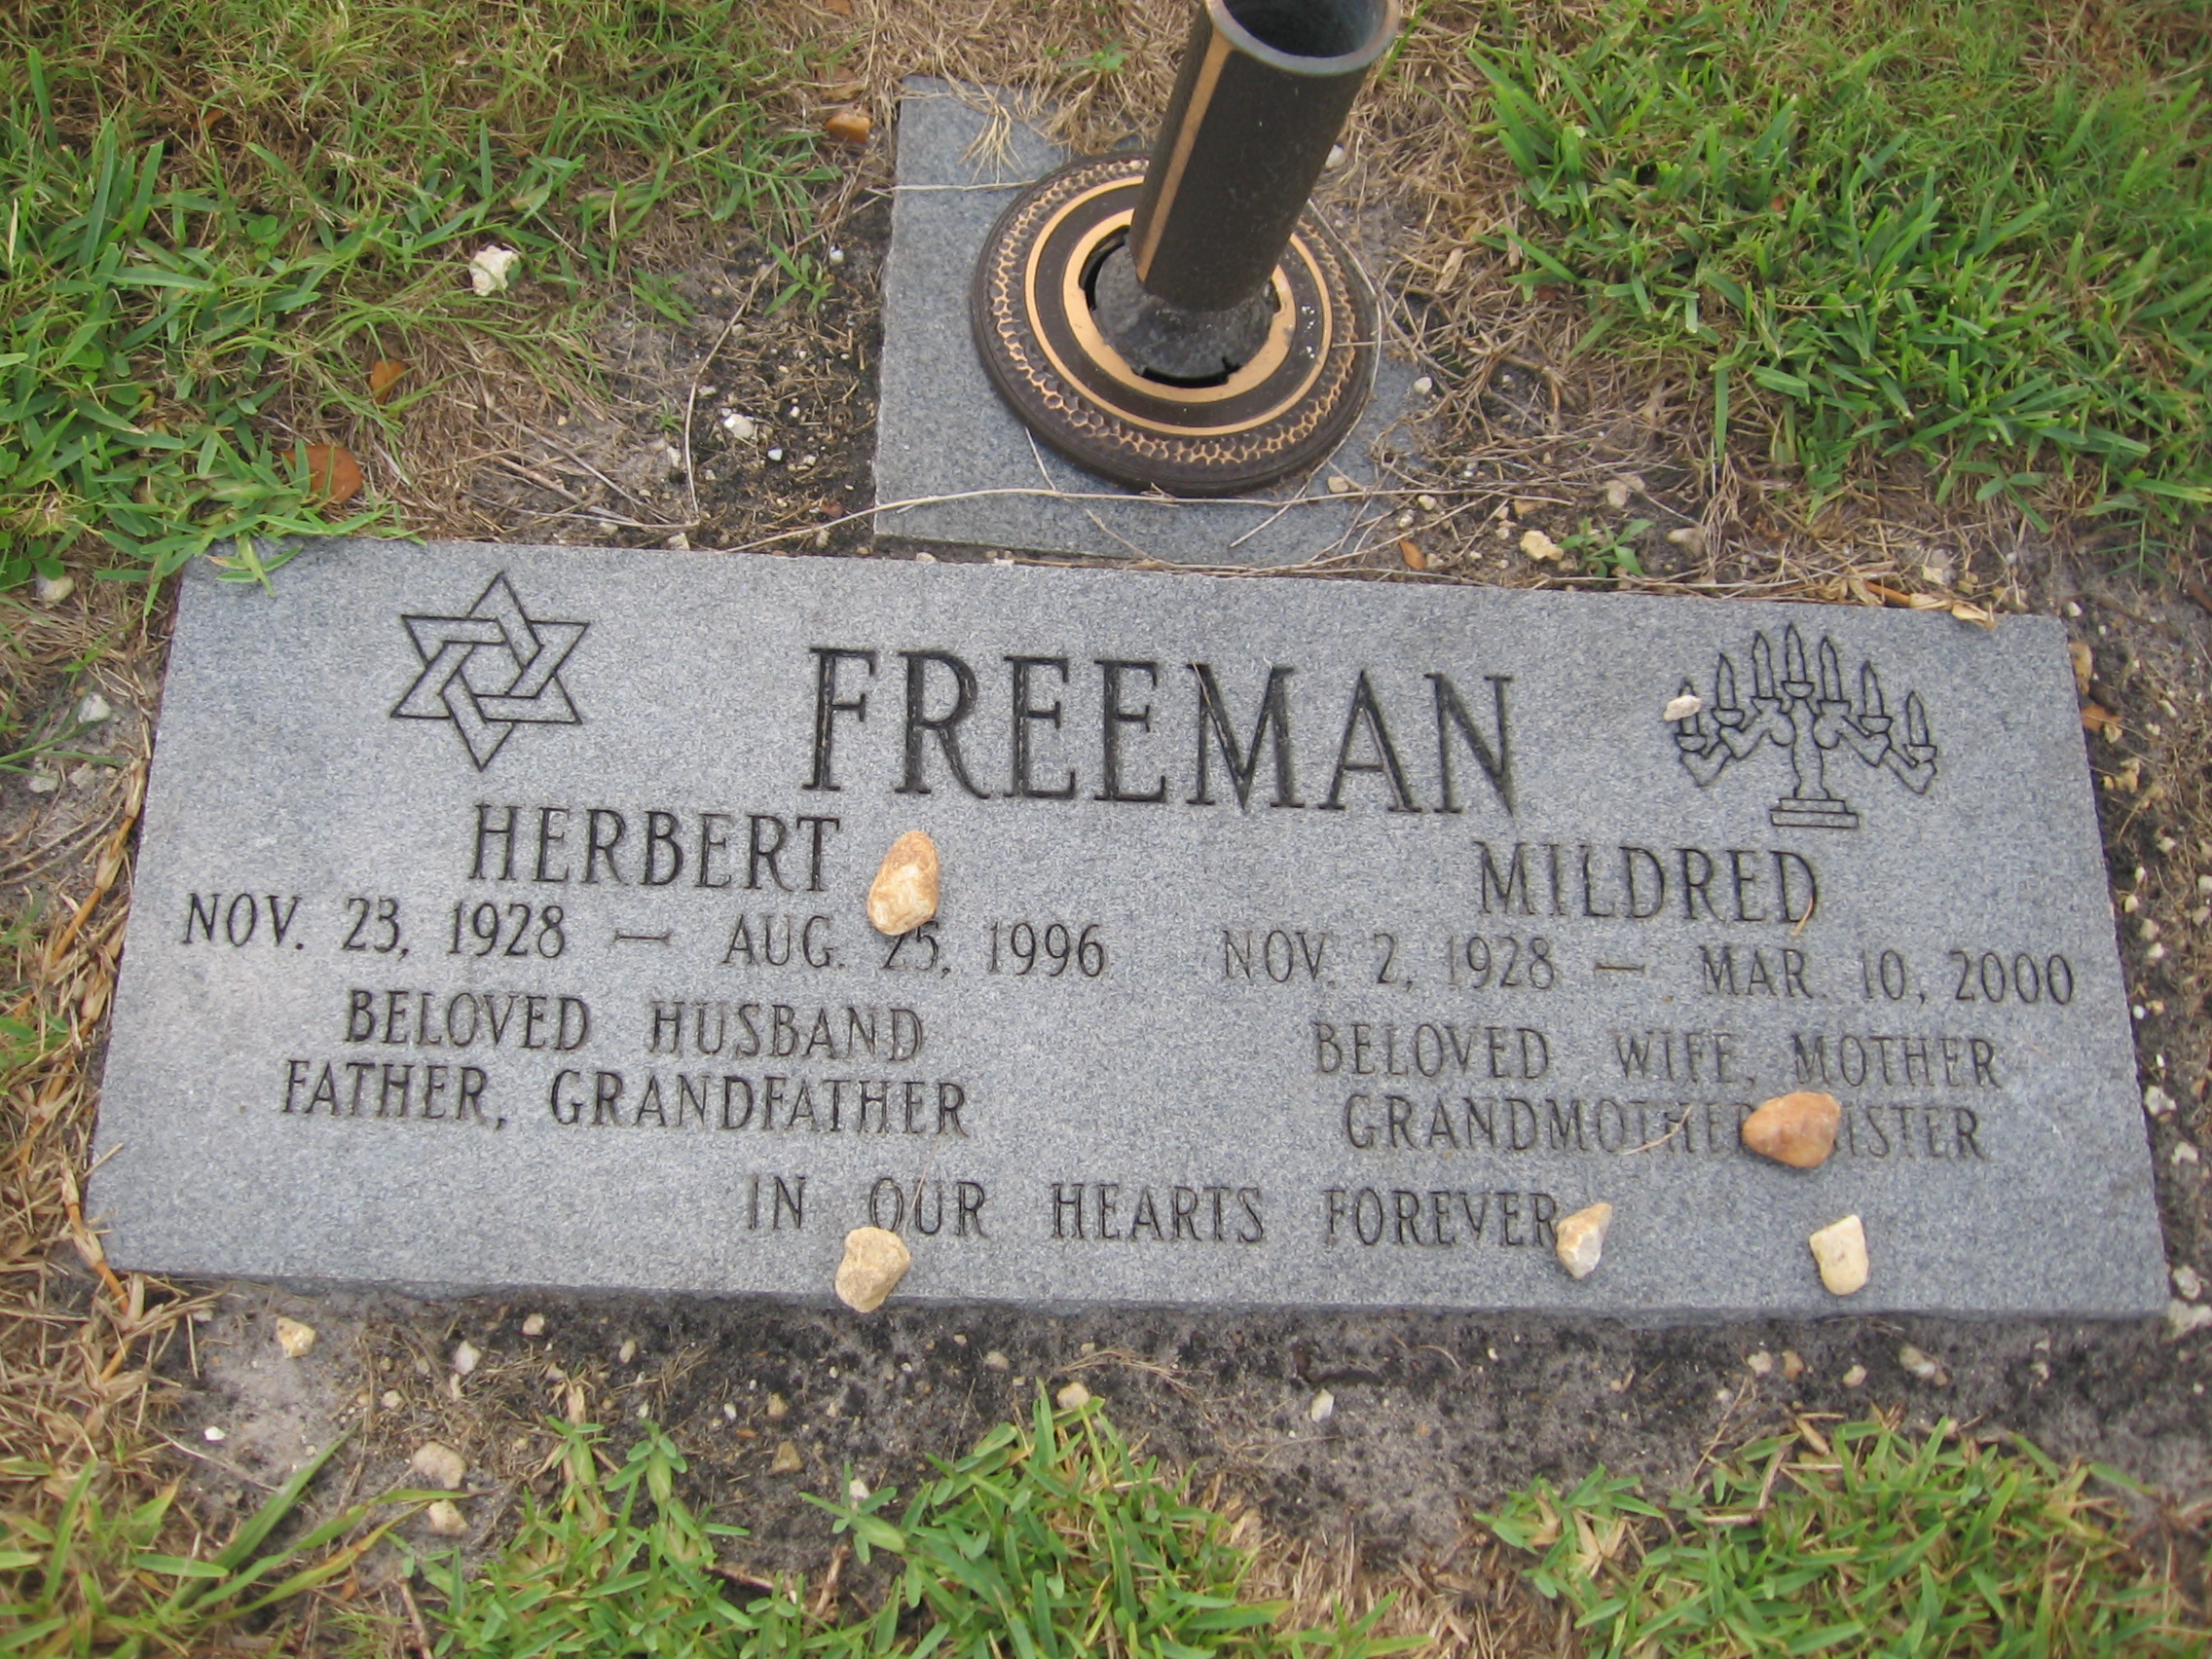 Herbert Freeman